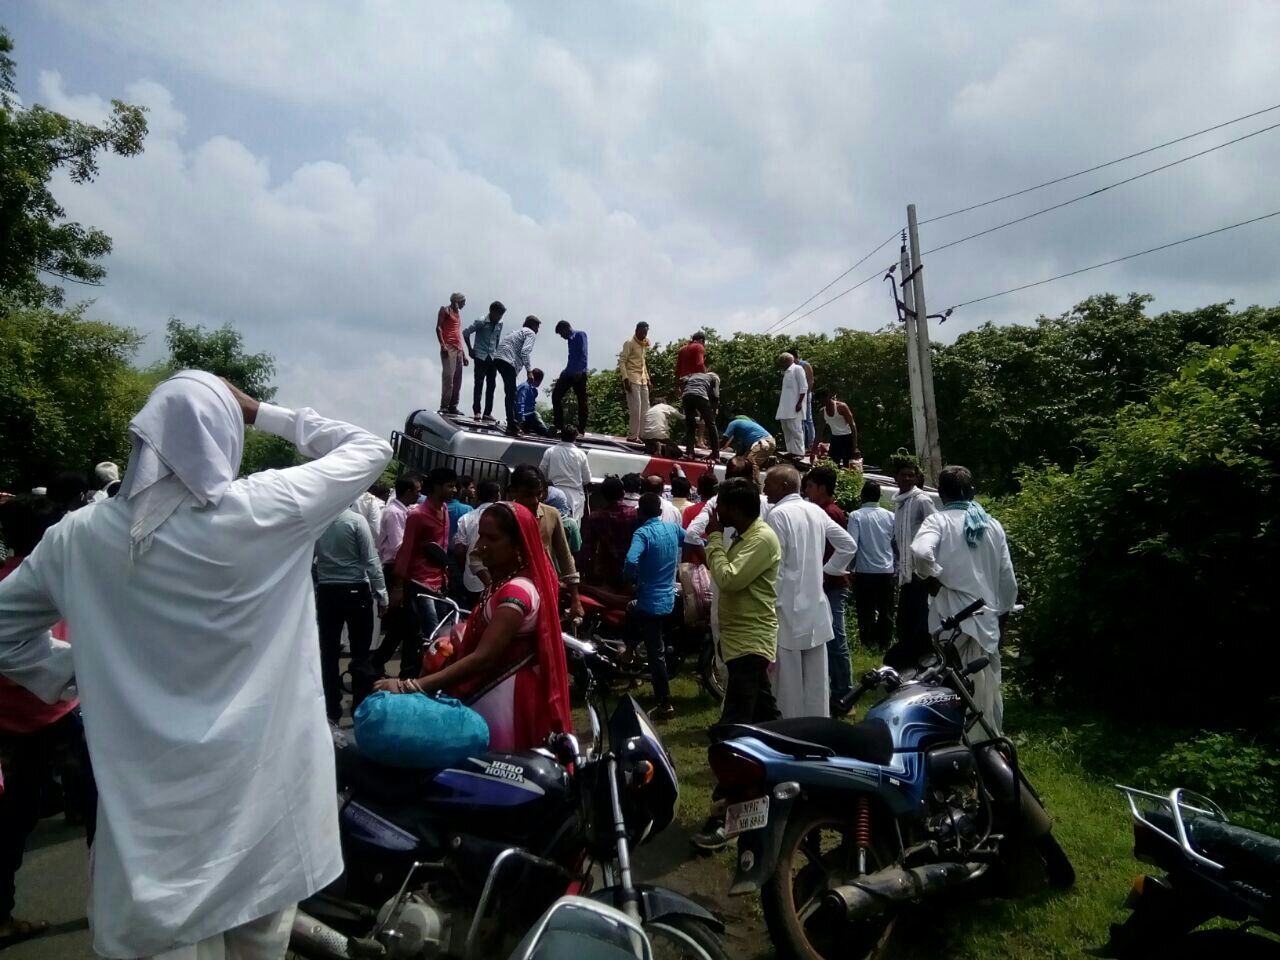 हरदा से खंडवा की ओर जाने वाली यात्री बस दुर्घटनाग्रस्त, एक दर्जन से अधिक यात्री घायल | New India Times